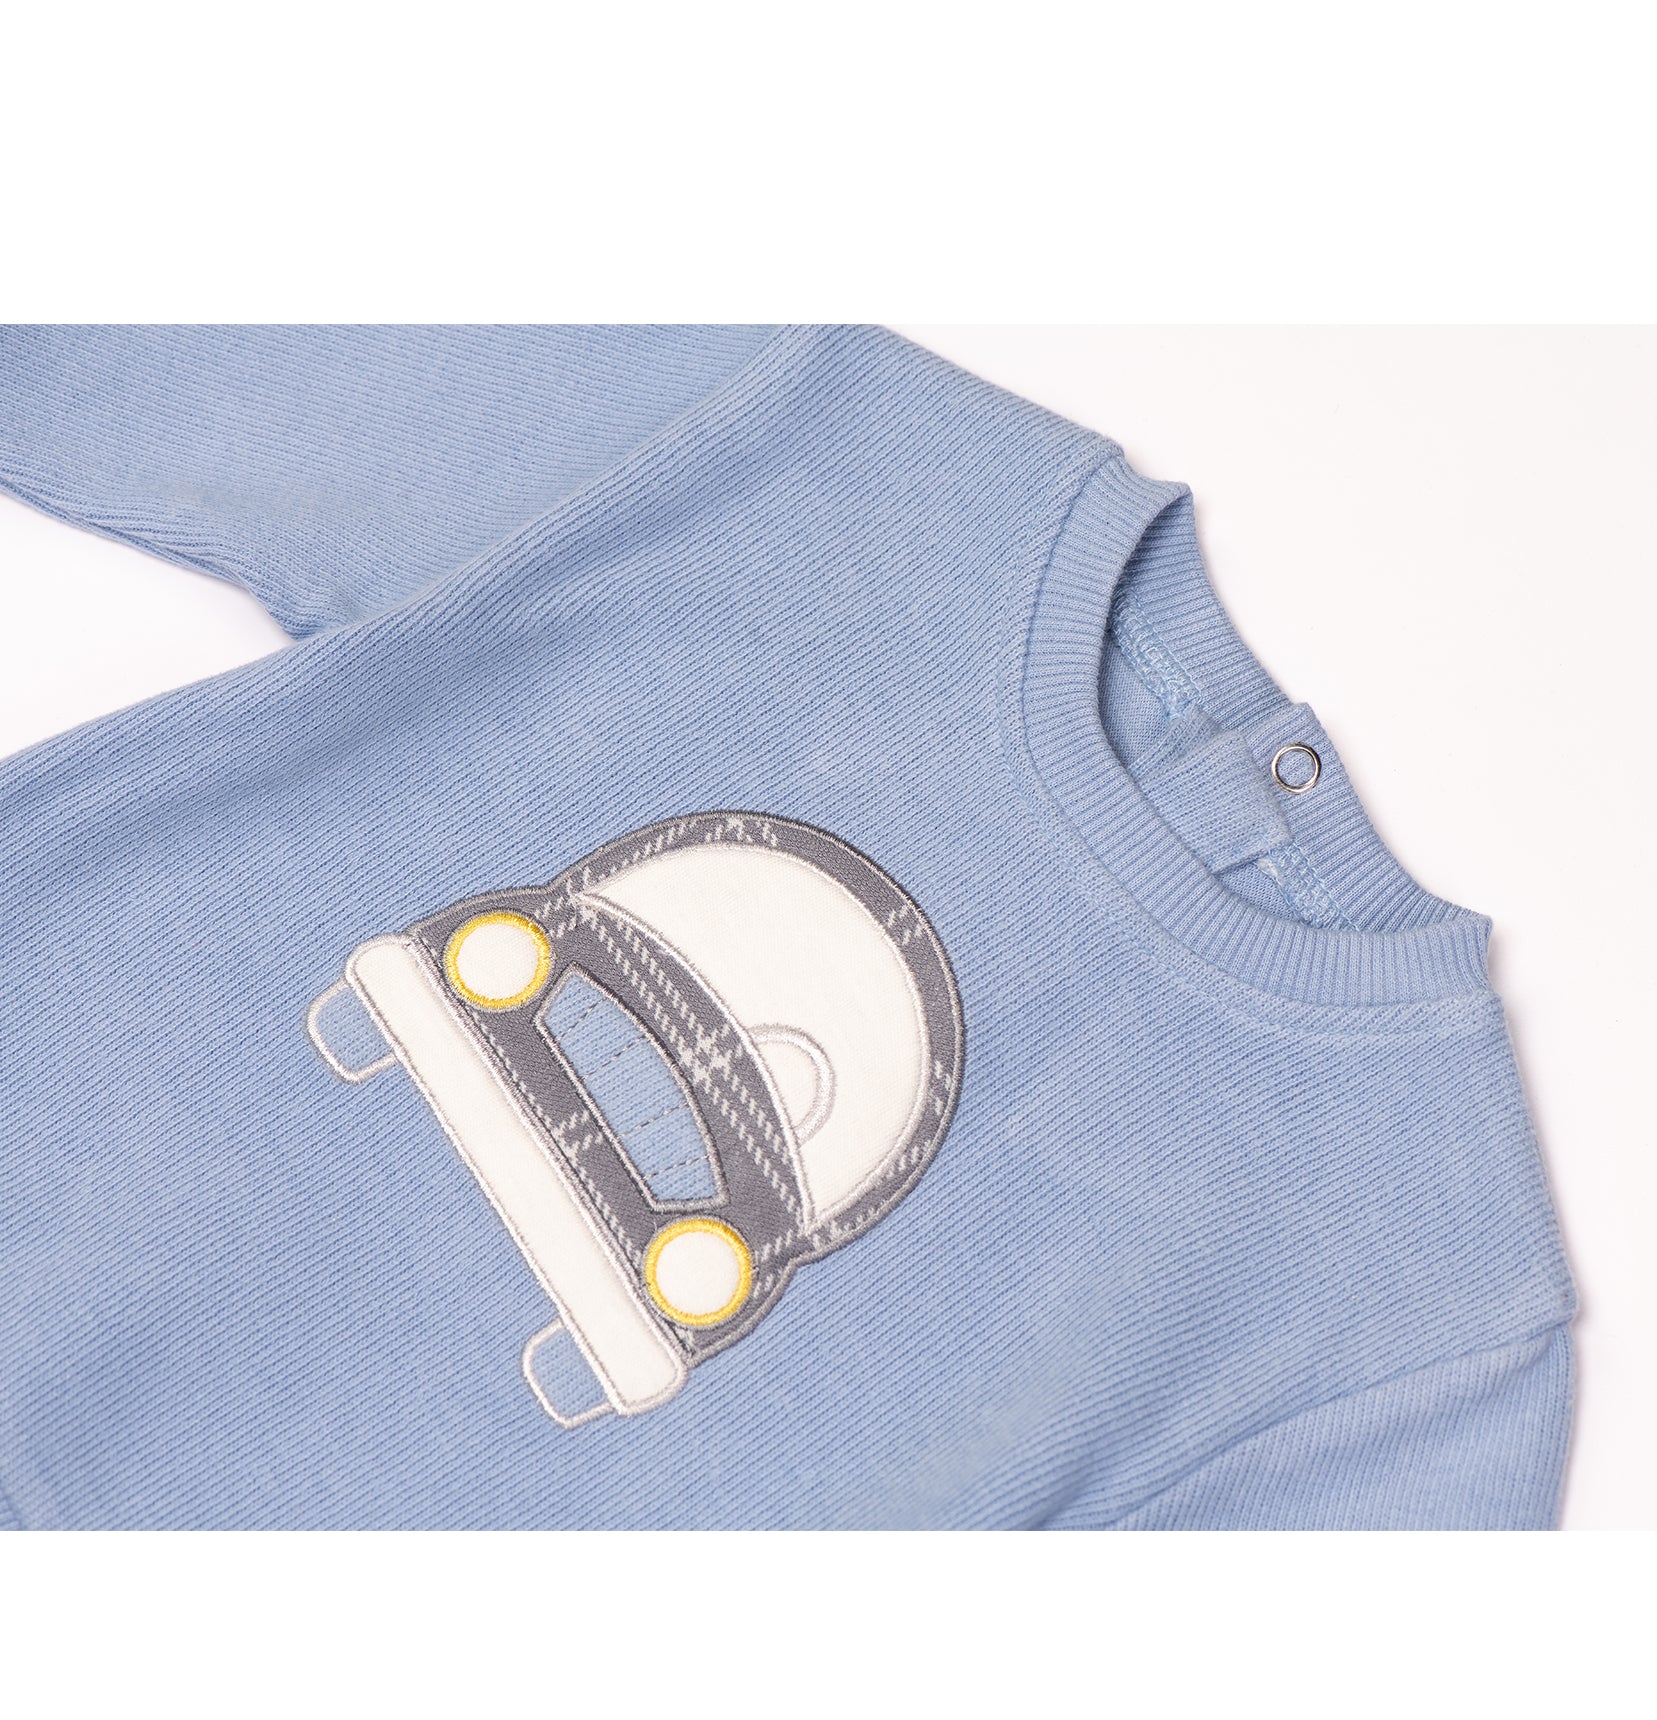 Cute car printed Babyboy sweatshirt by Pompelo